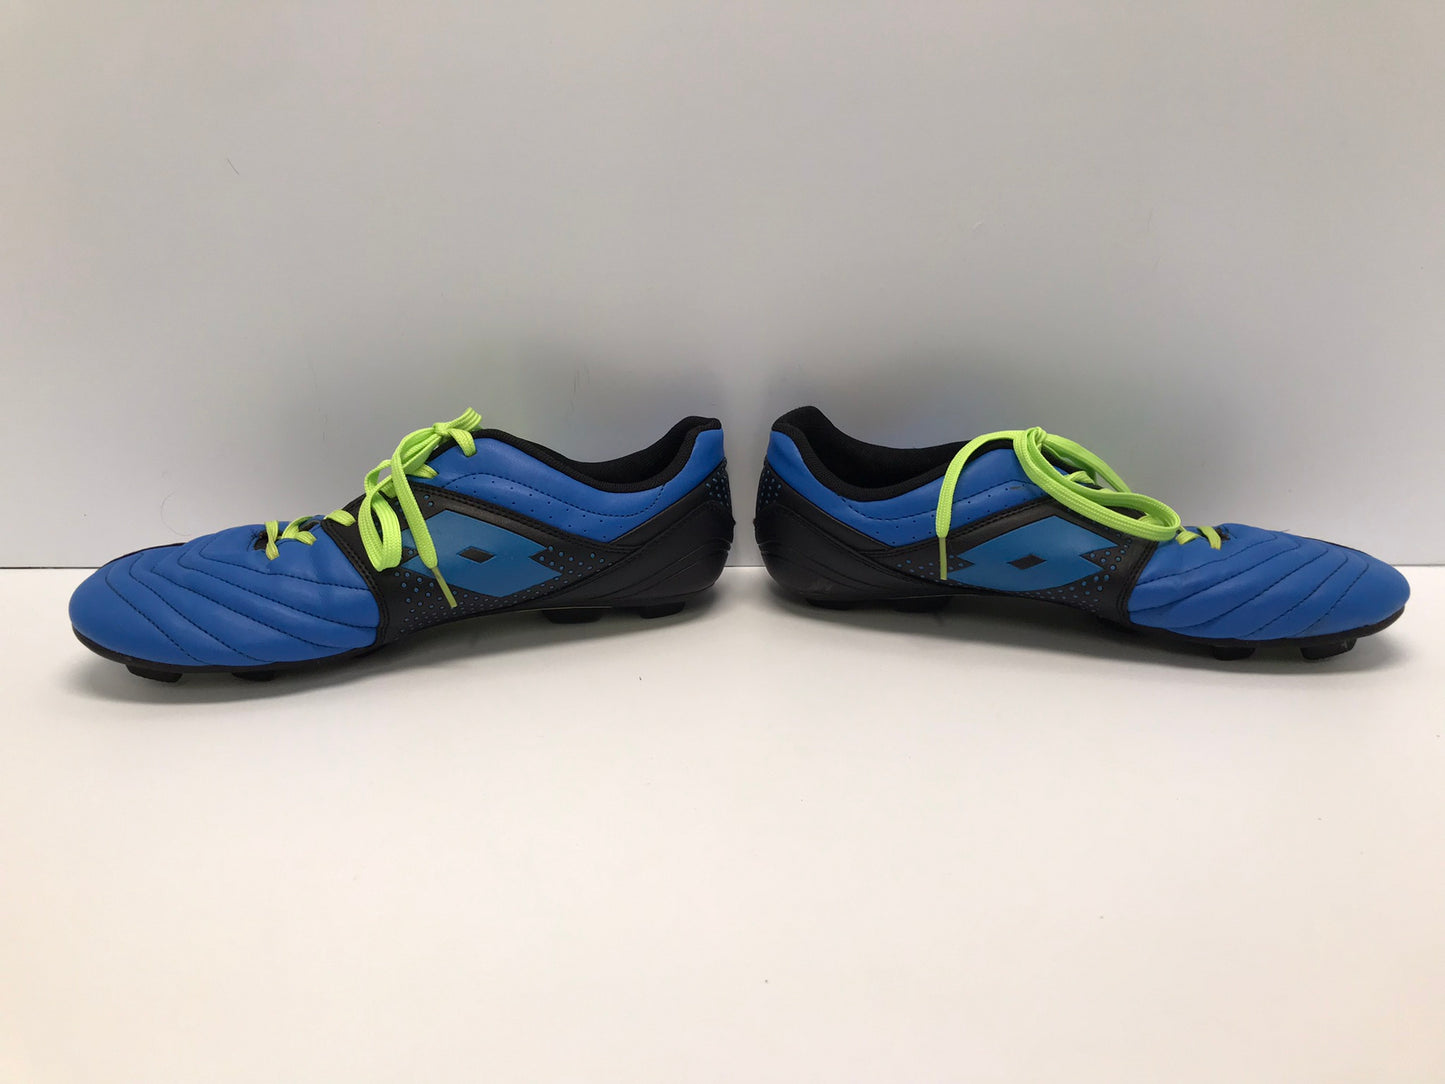 Soccer Shoes Cleats Men's Size 10 Lotto Blue Lime Excellent